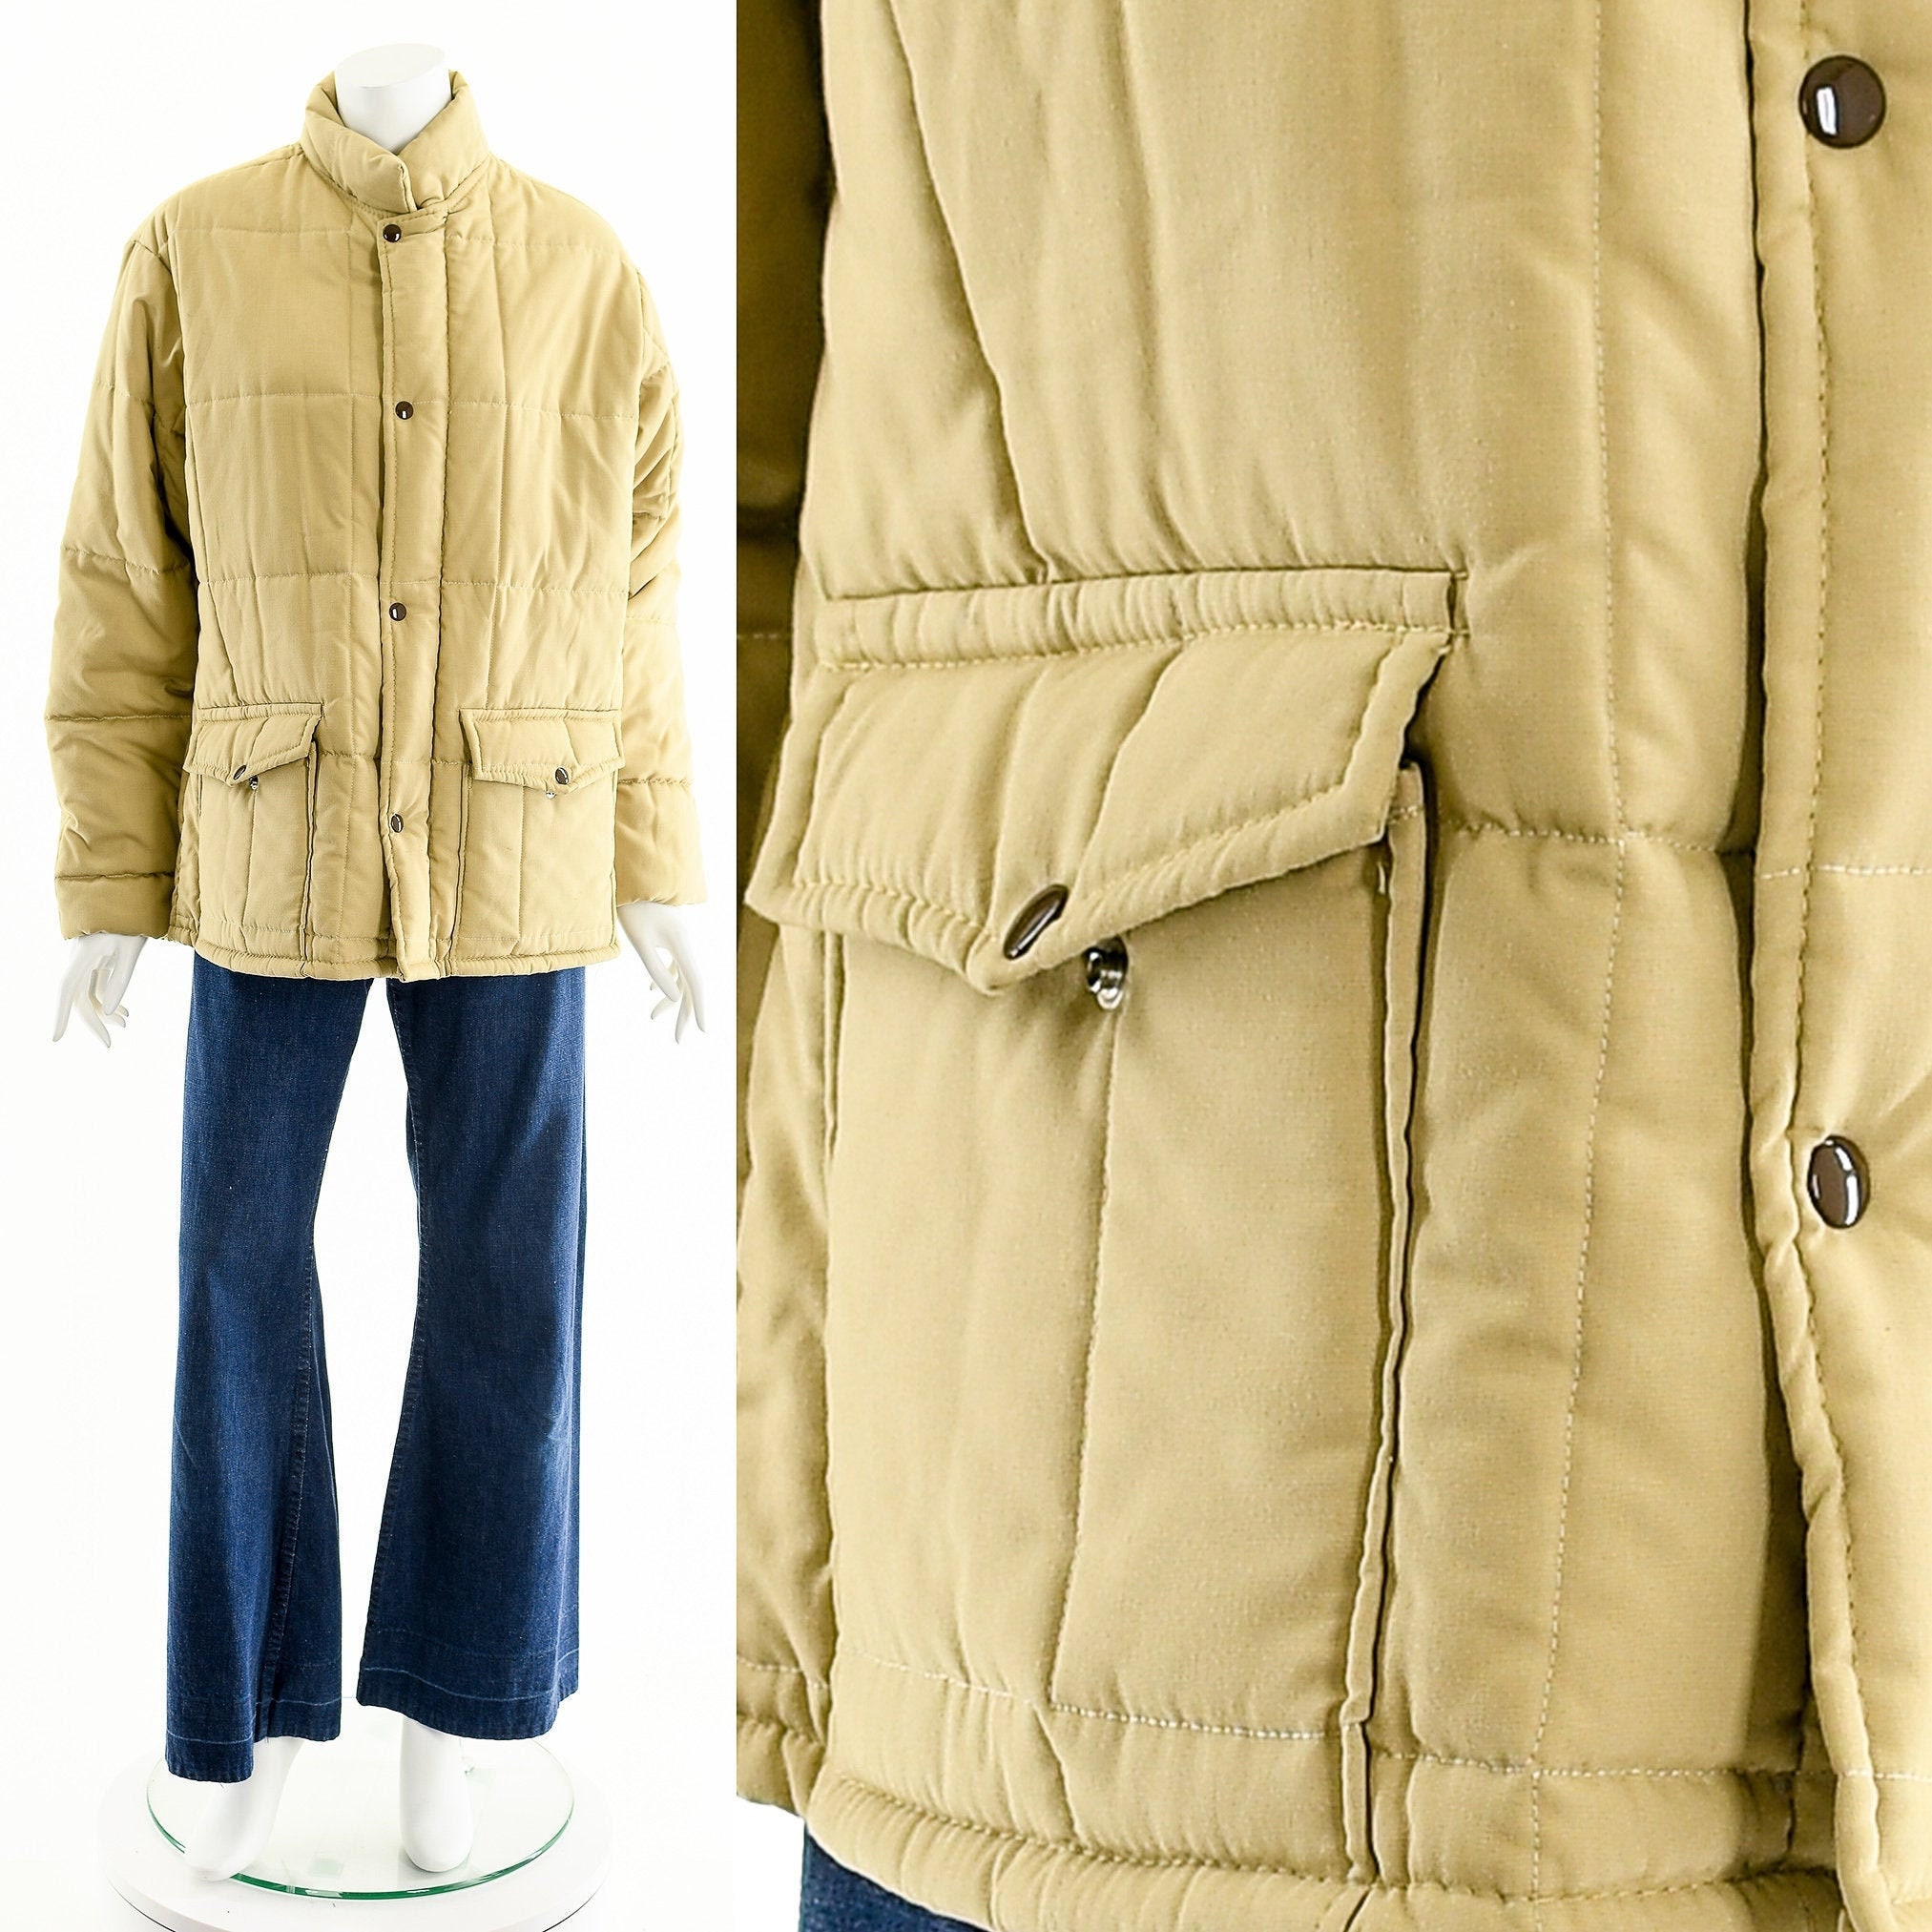 fashionrework Minimalist Quilted Coat,Futuristic Khaki Coat,Avant Garde Jacket,Down Quilt Jacket,Warm Winter Coat,Vintage Winter Ski Jacket,70s 80s Jacket